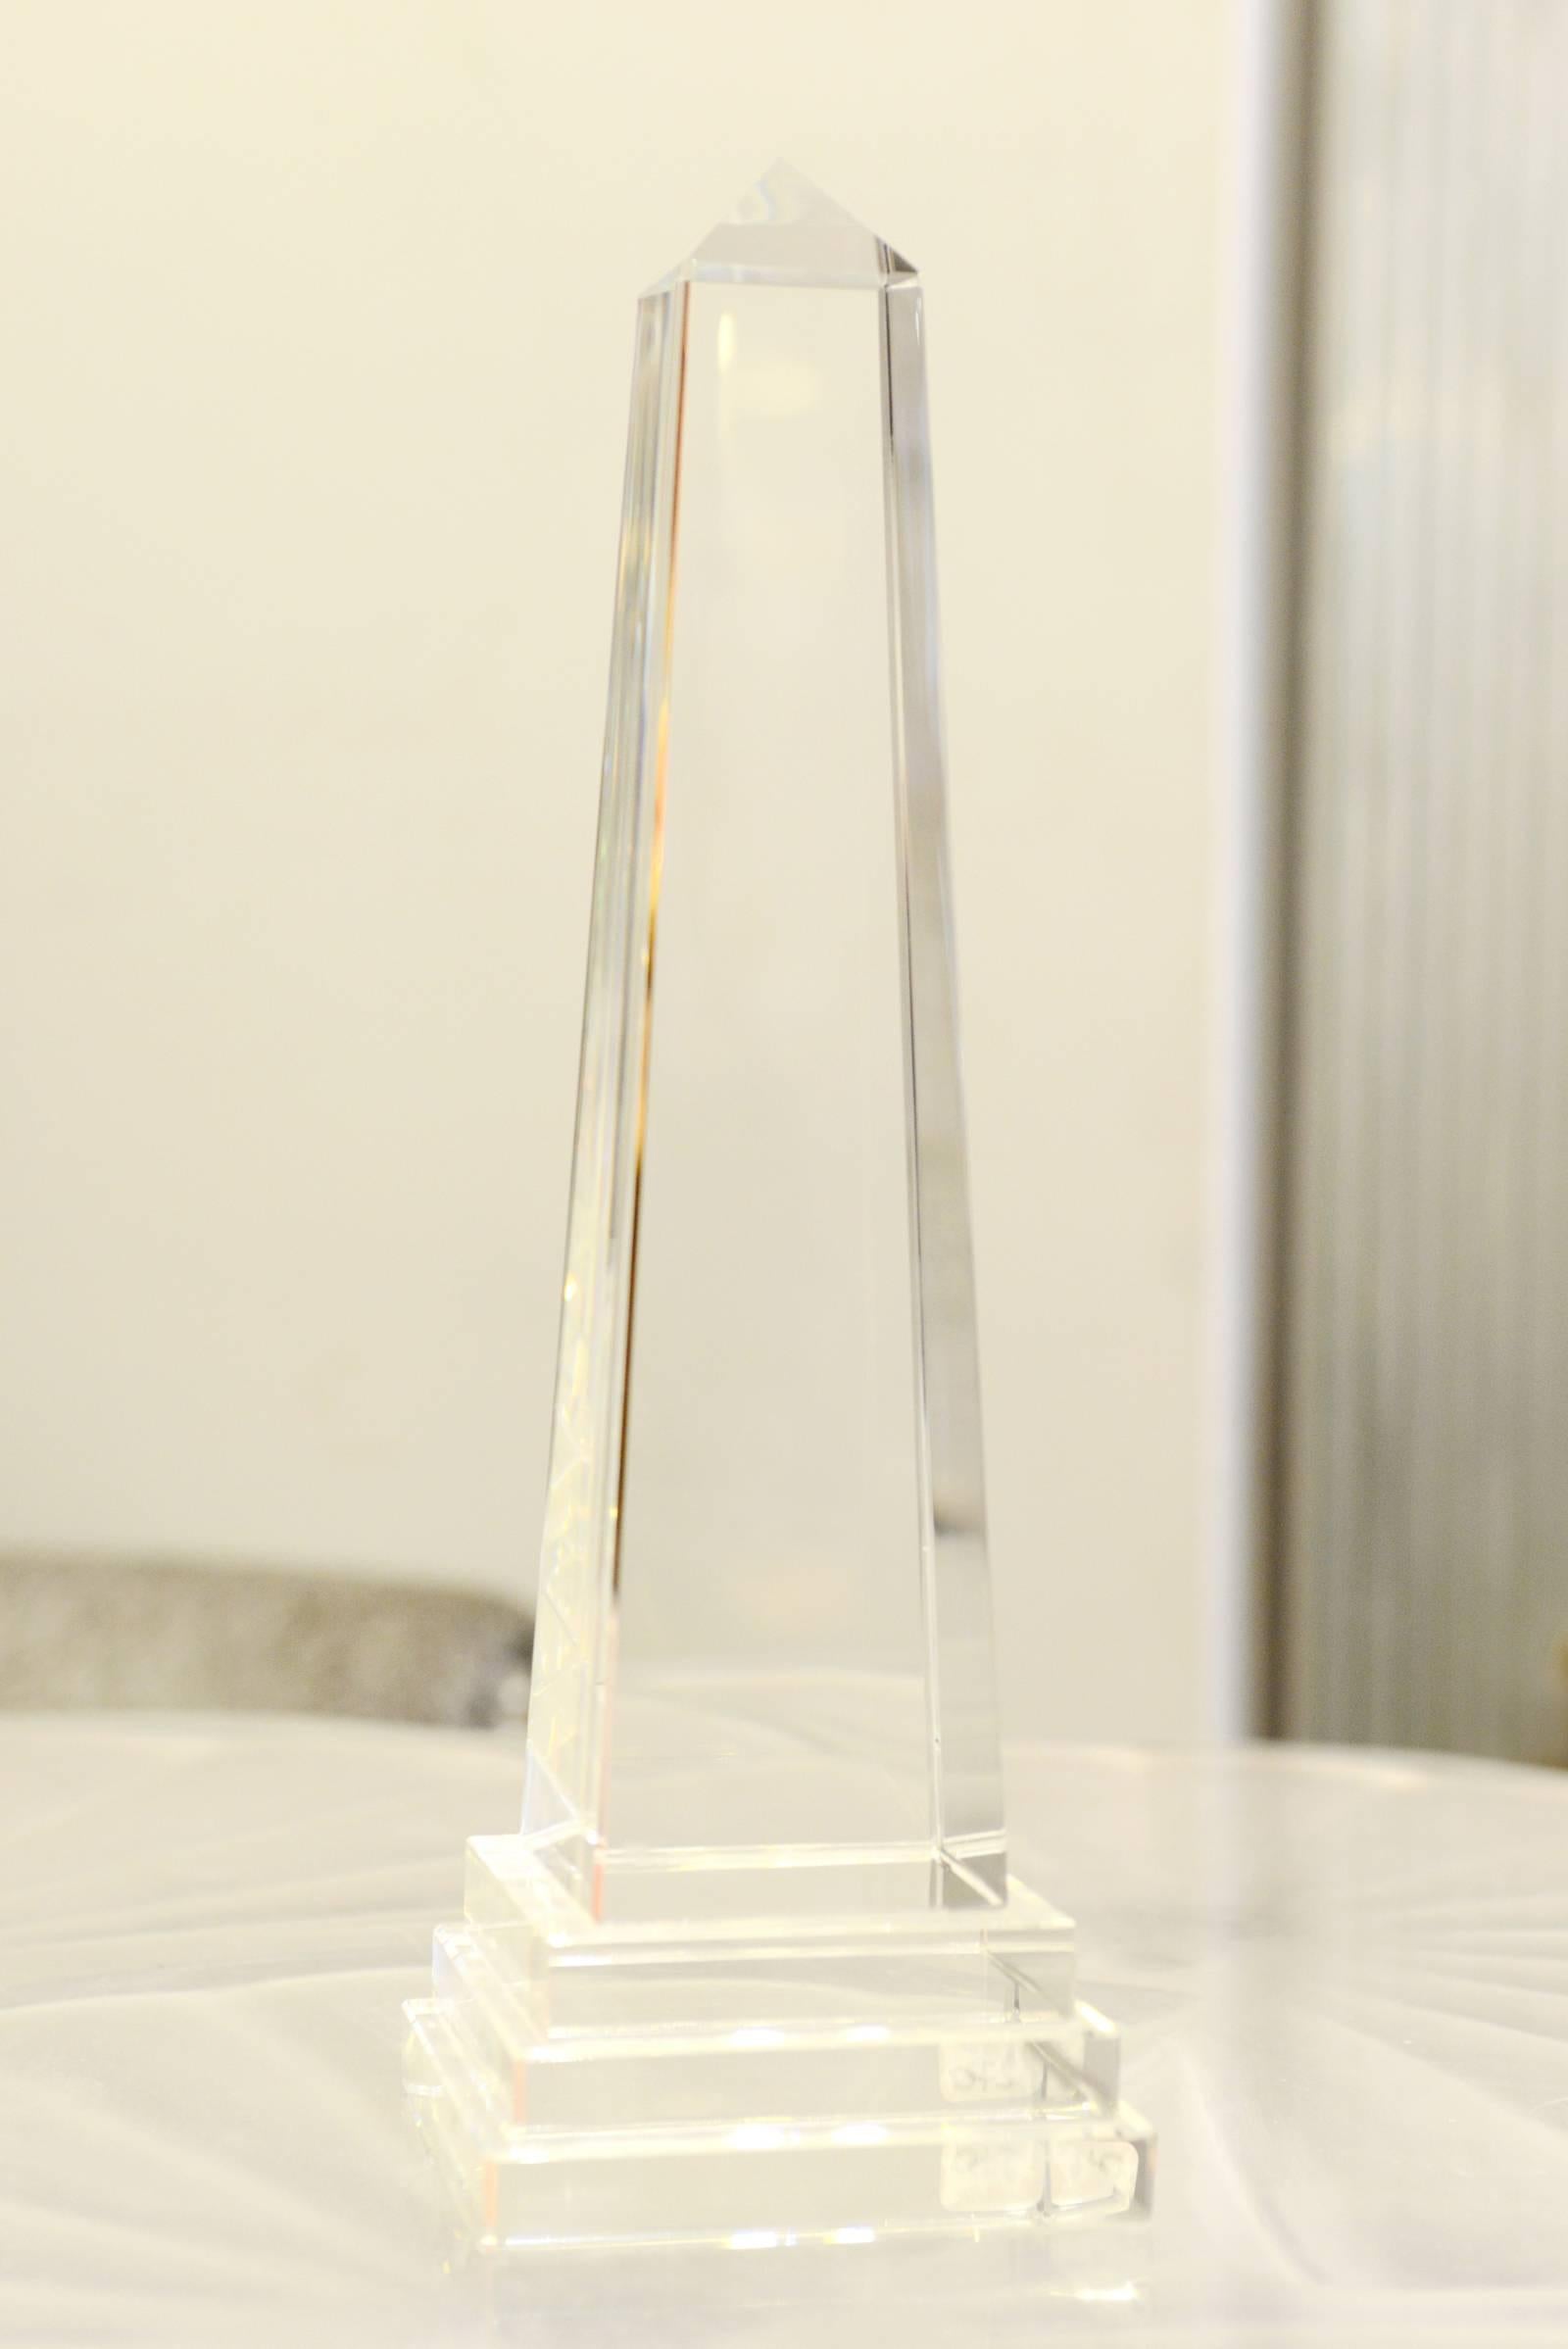 Obelisk crystal in crystal glass on
crystal base. Available in:
L6.5 x P6.5 x H26cm, price: 300,00€.
L11 x P11 x H35cm, price: 480,00€.
L11 x P11 x H49cm, price: 750,00€.
